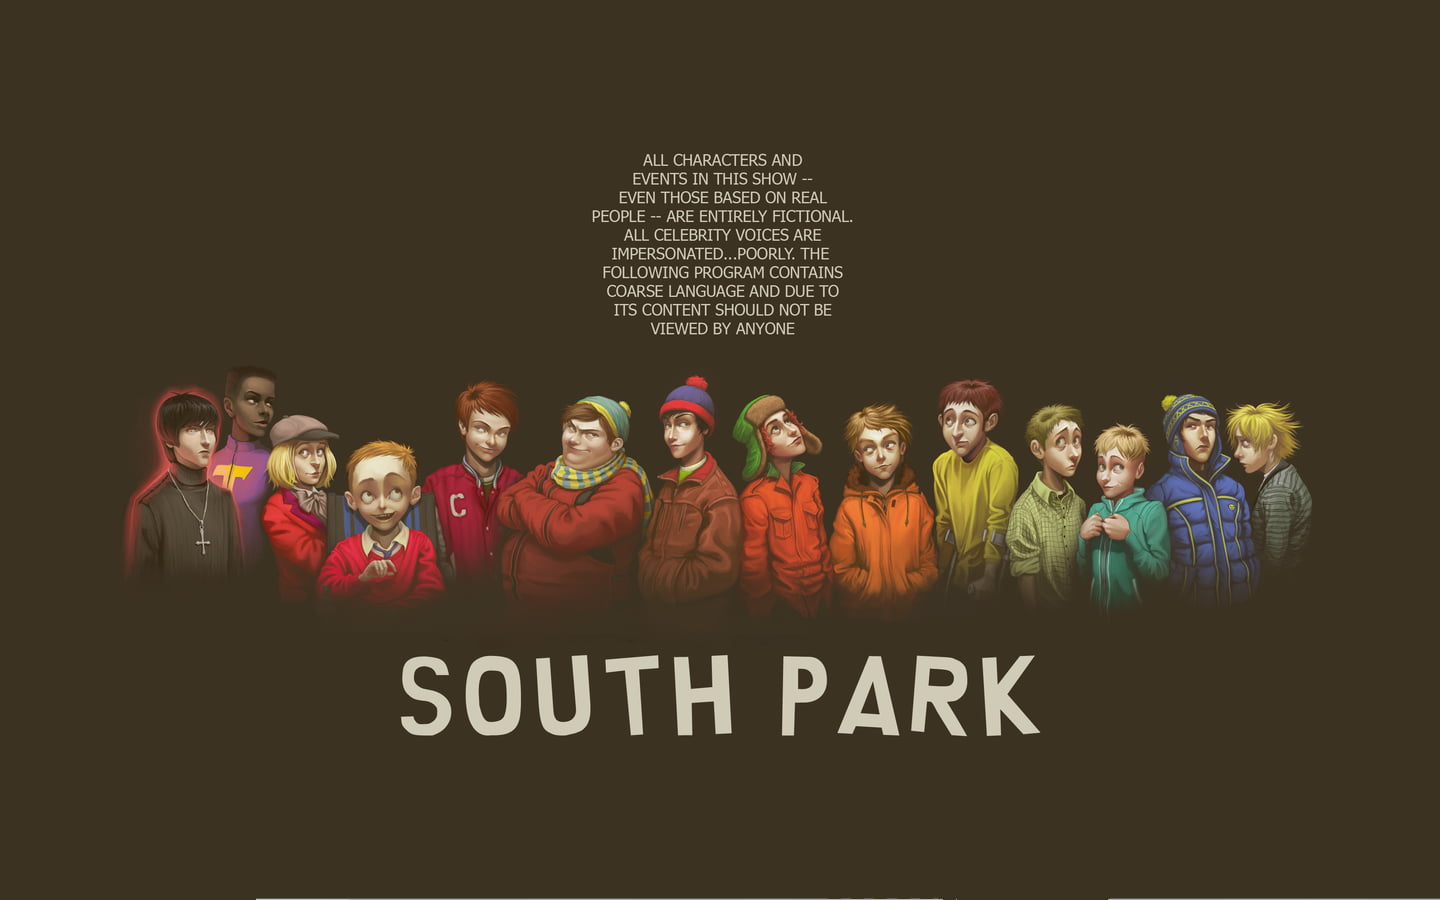 South Park album, text, men, group of people, communication, studio shot